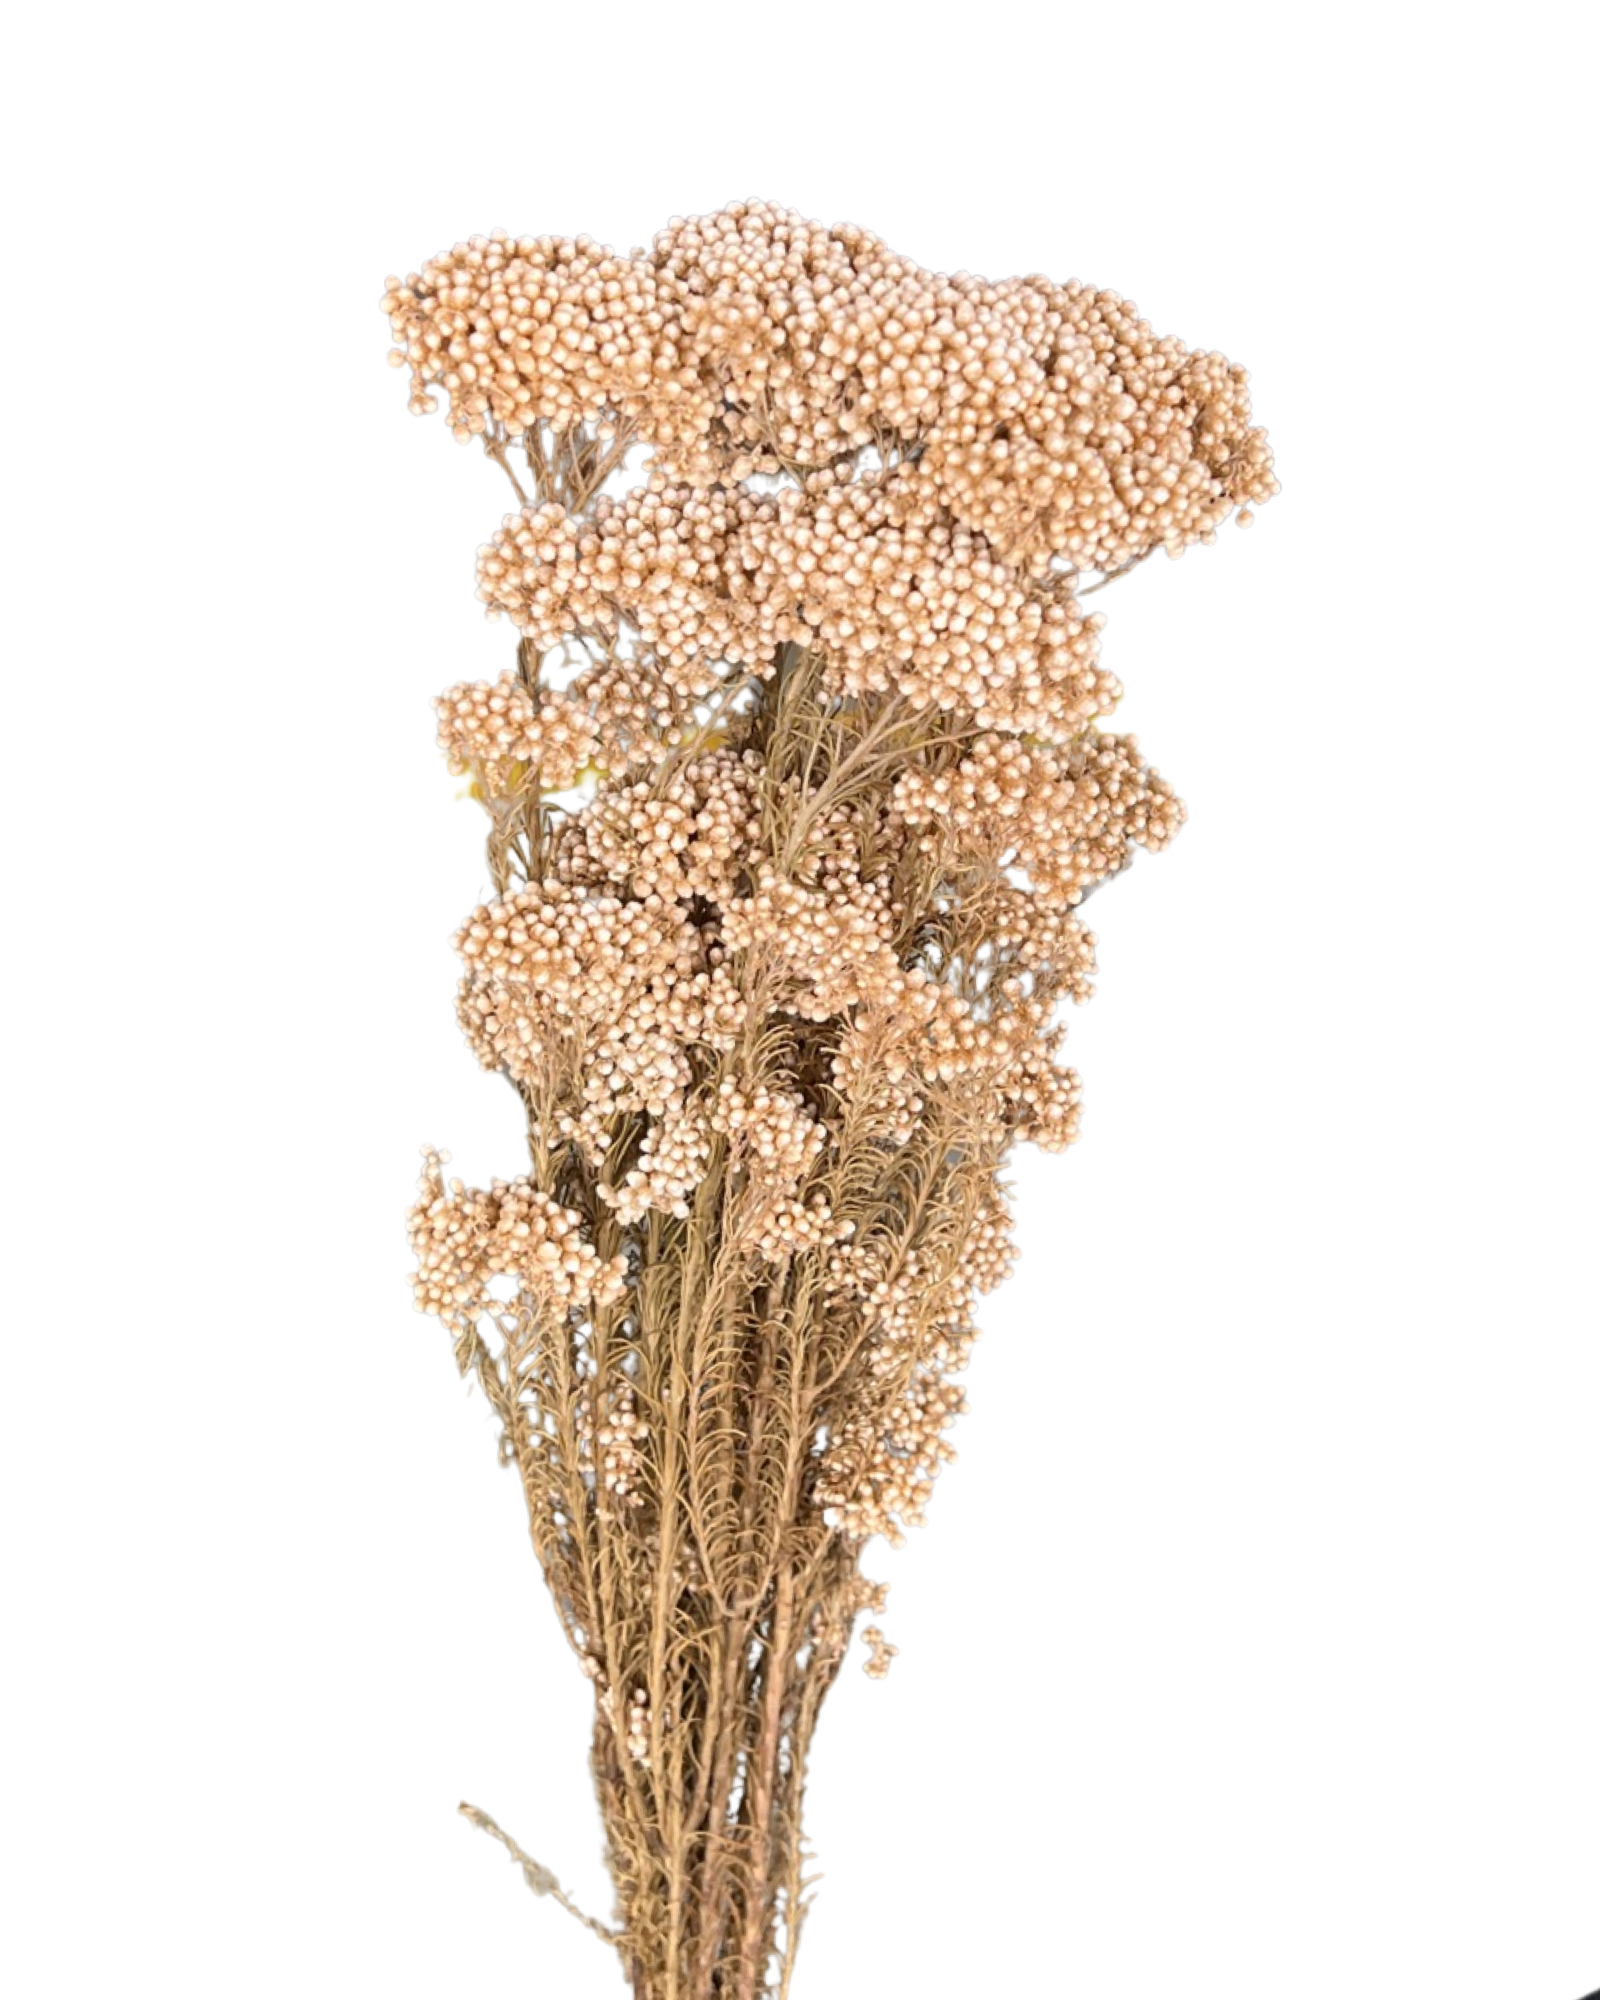 Rice flowers(OZOTHAMNUS DIAOSMIFOLIUS) - Pink